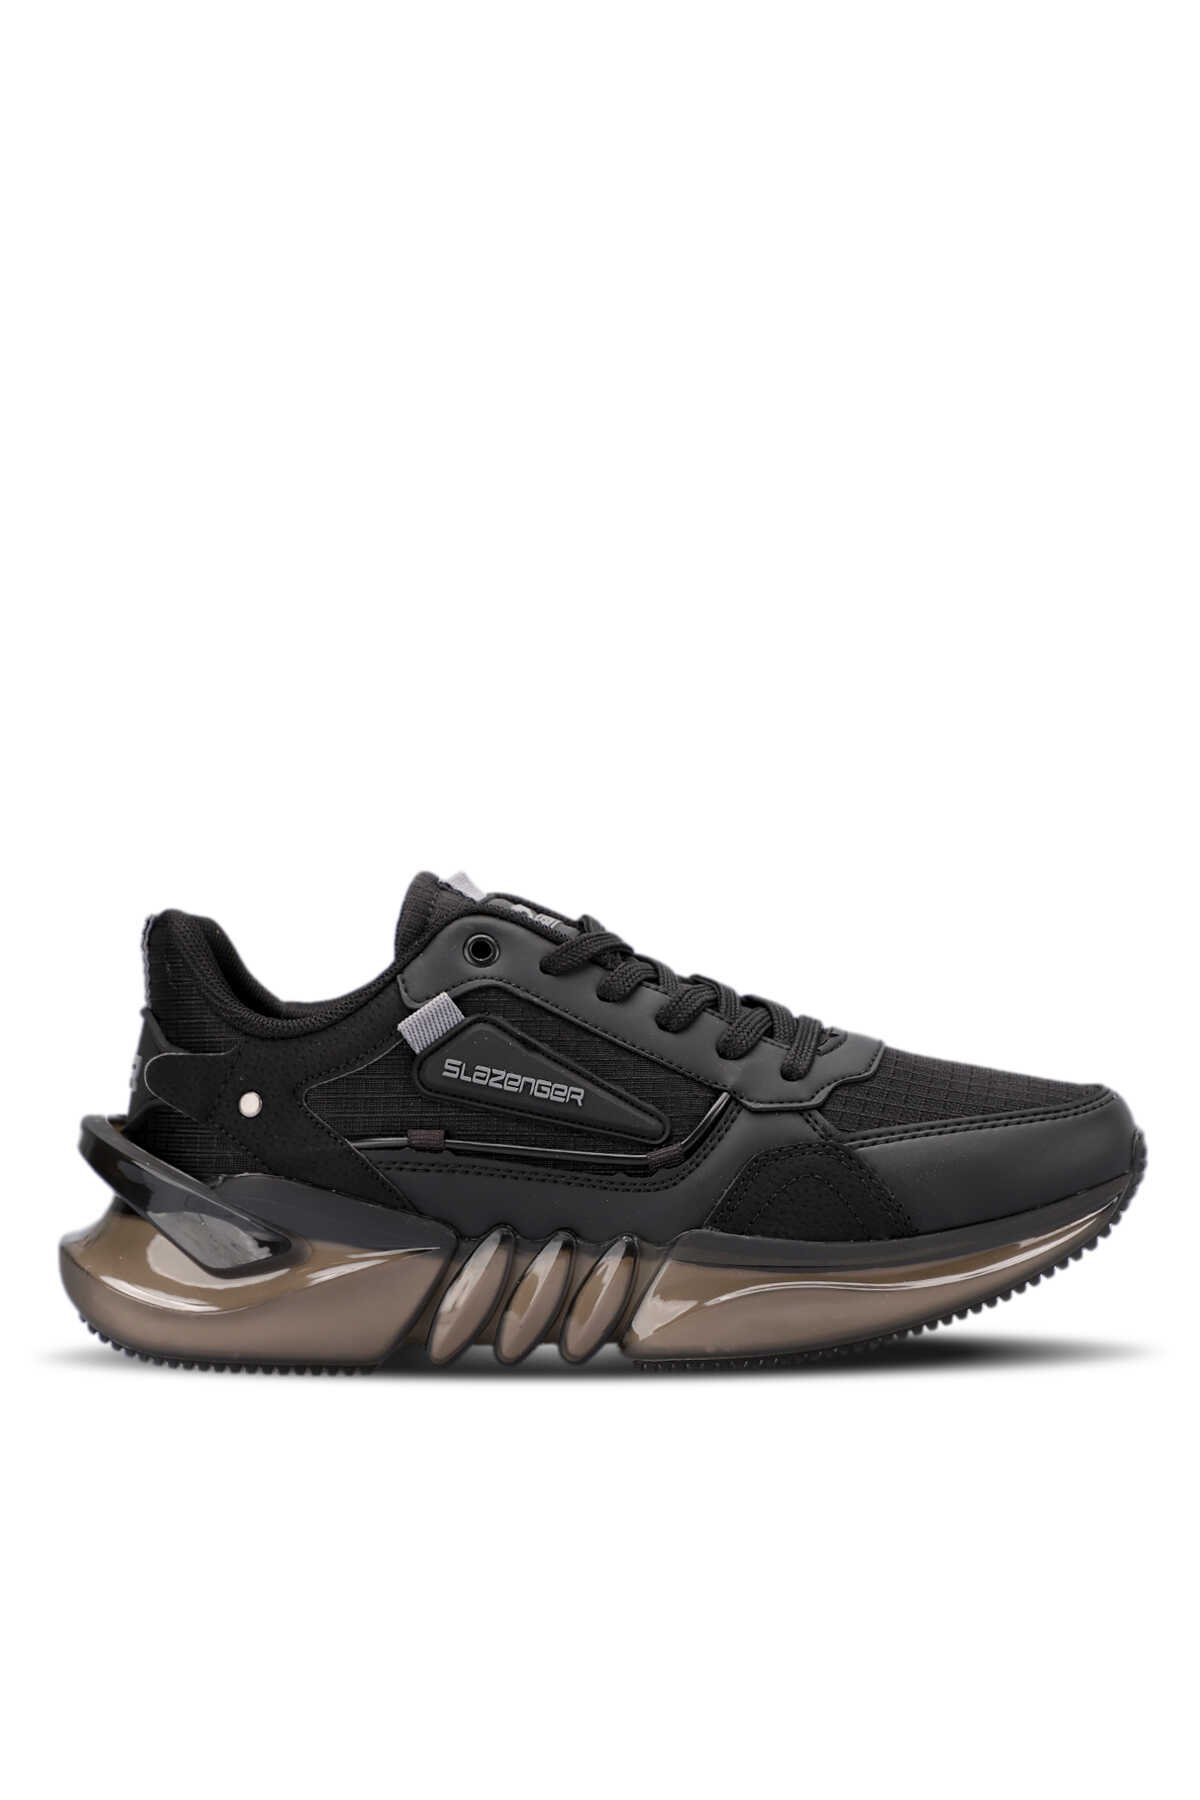 Slazenger - Slazenger ZENON Sneaker Erkek Ayakkabı Siyah / Siyah